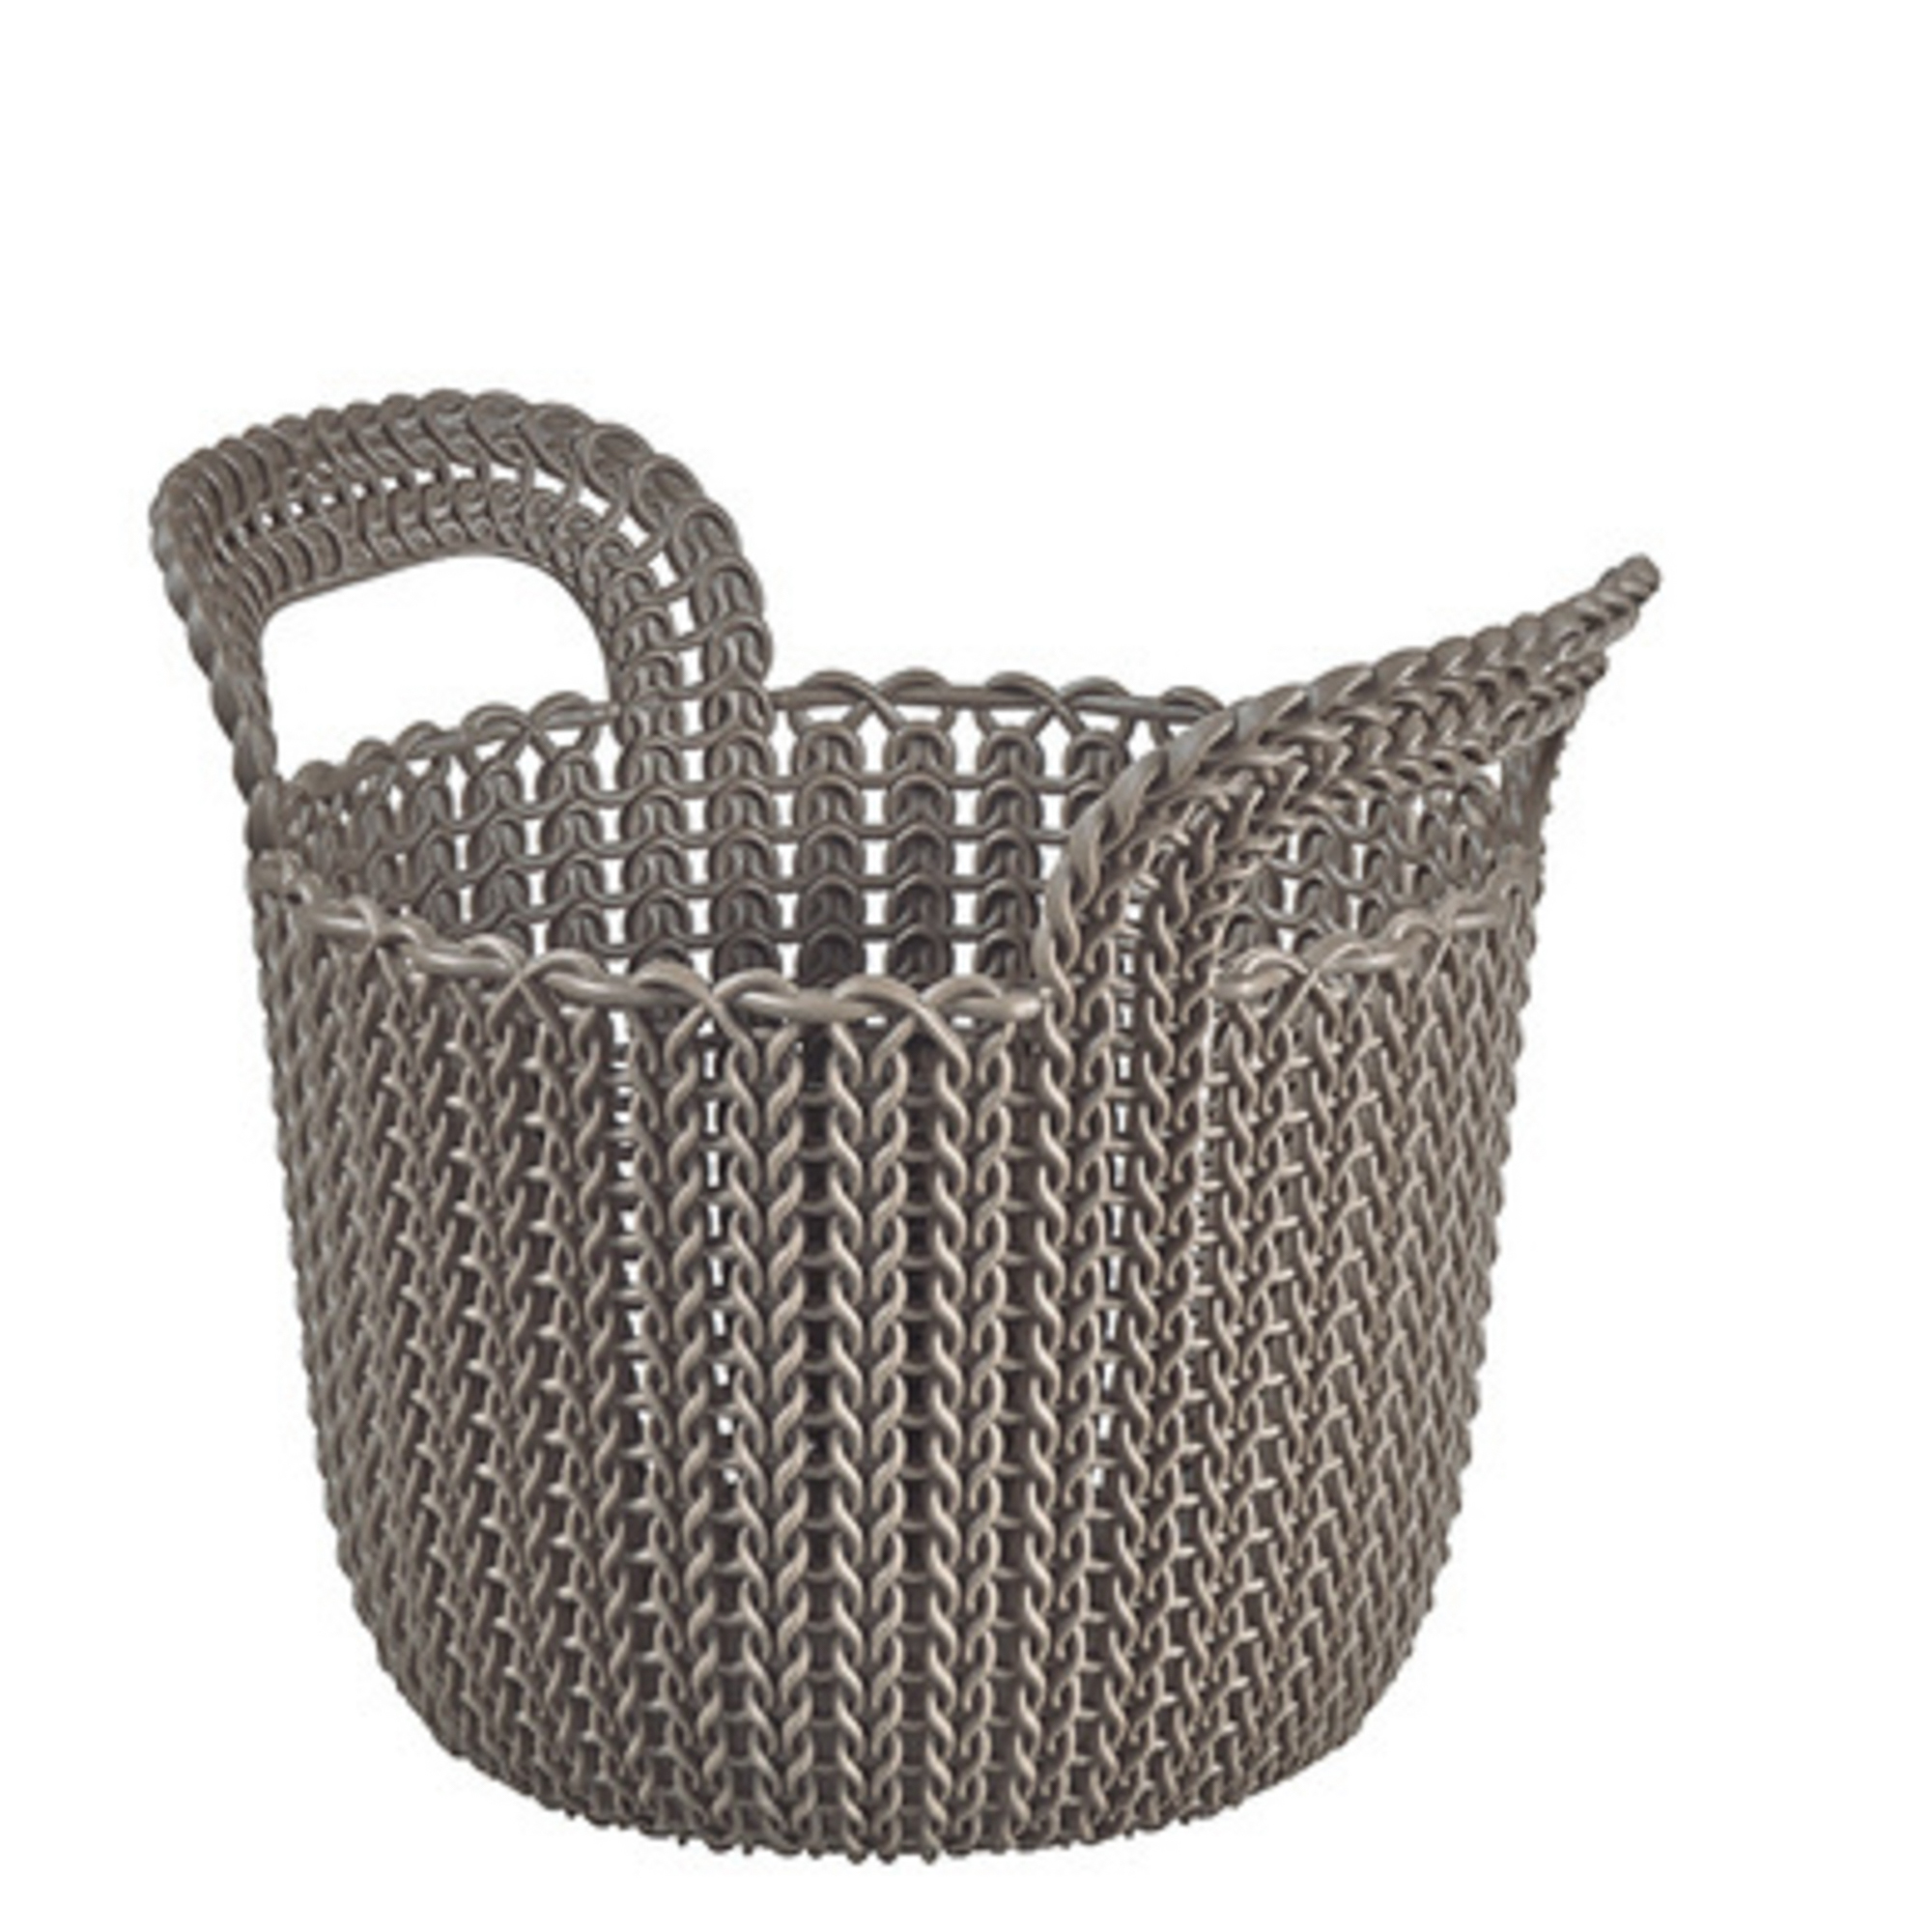 Контейнер Curver круглый xs knit 3 л коричневый curver лоток knit 7x26x20см темно коричневый